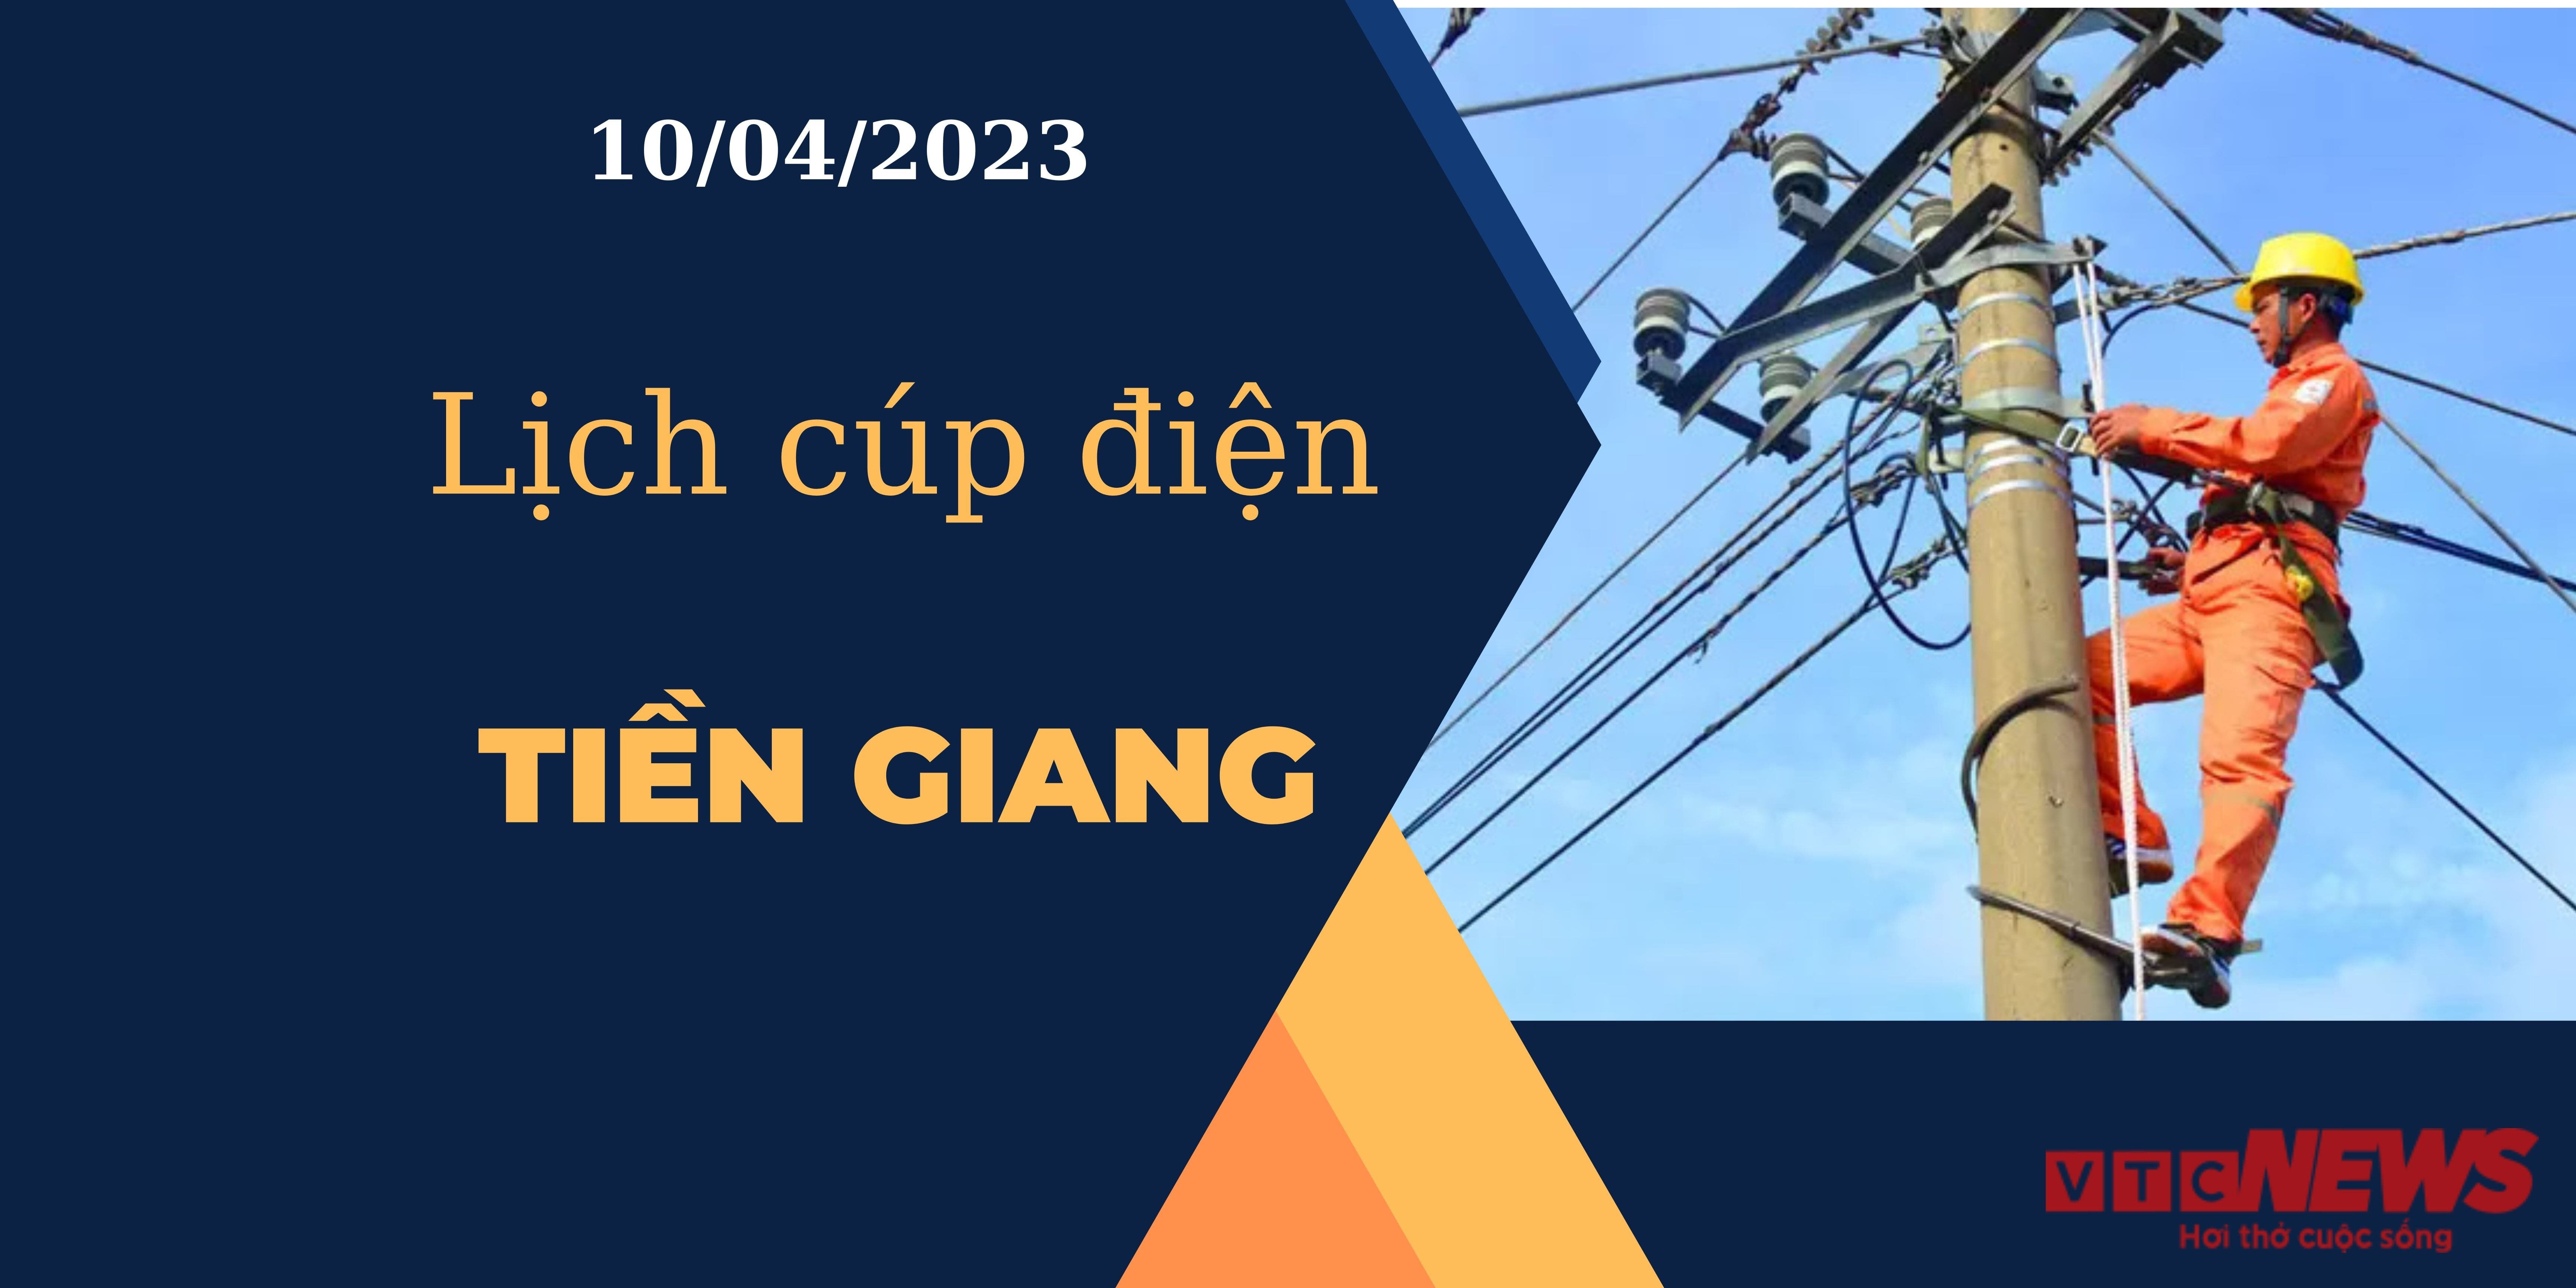 Lịch cúp điện hôm nay tại Tiền Giang ngày 10/04/2023 - 1